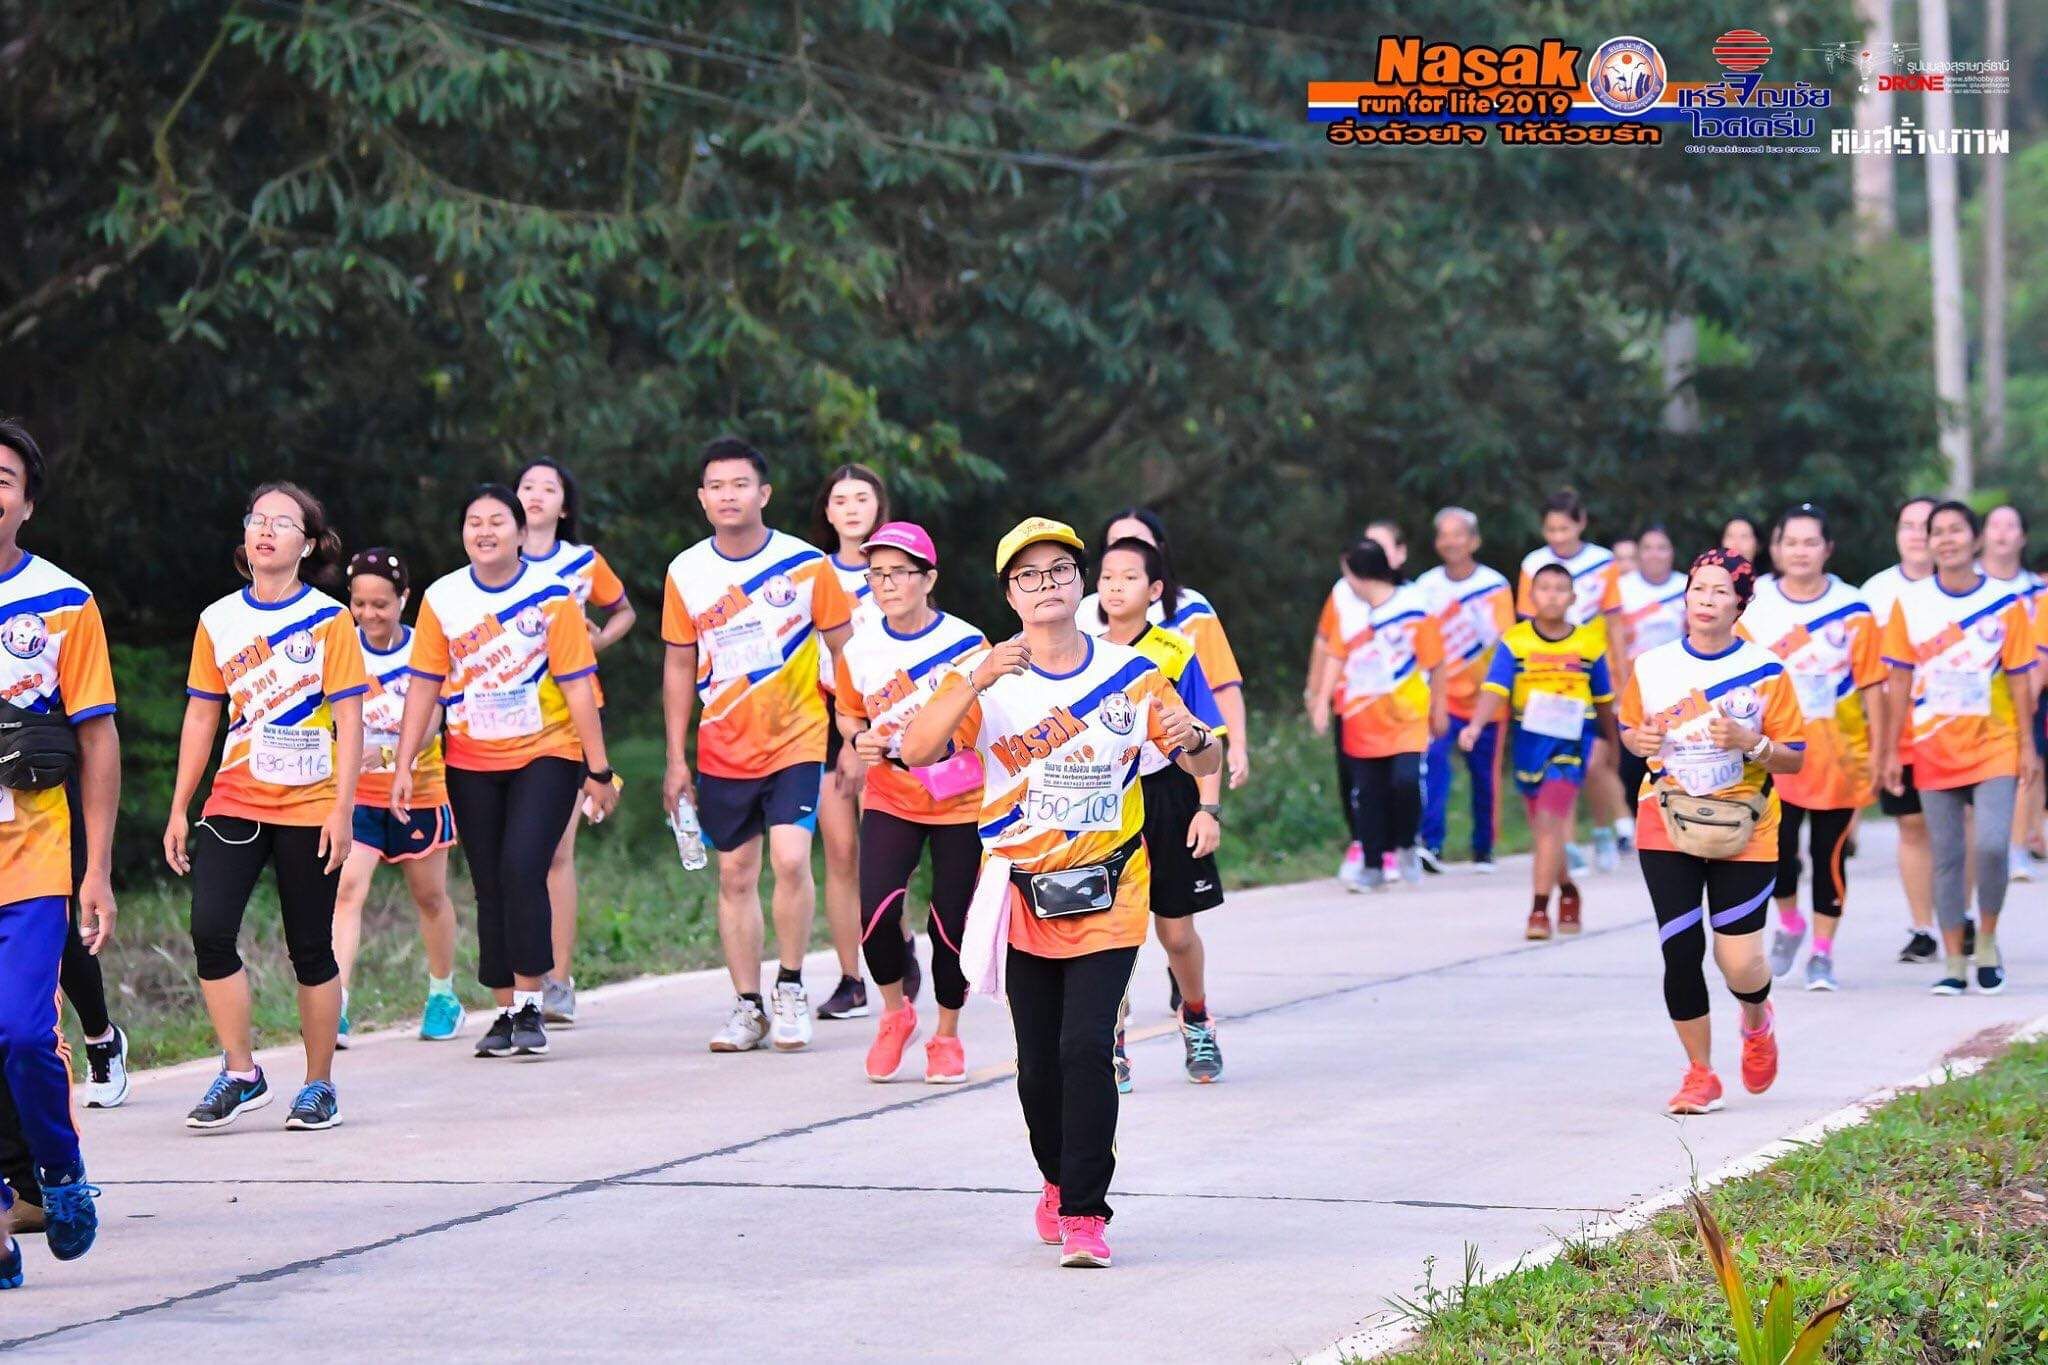 อบต.สวี เข้าร่วมกิจกรรมวิ่งเพื่อการกุศลของ อบต.นาสัก ในวันที่ 19 พค 2562 "โครงการ Nasak run for life 2019 วิ่งด้วยใจ ให้ด้วยรัก"